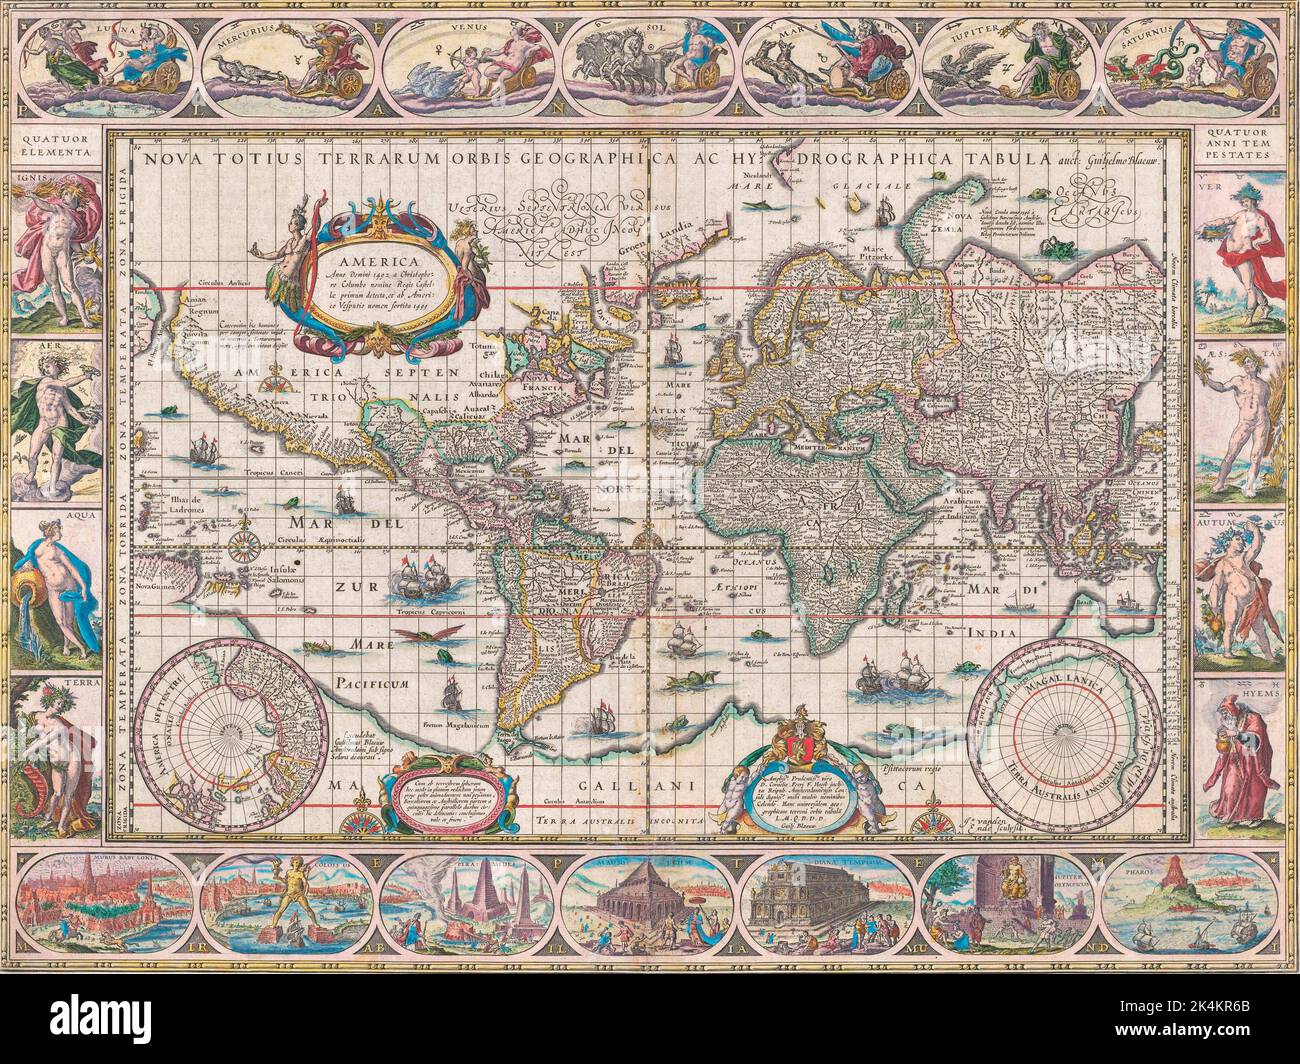 Mapa del mundo que data de 1634/1635 por Willem Blaeu. Nova totius terrarum orbis geographica ac hydrographica tabula. En la parte inferior del mapa hay ilustraciones de las siete maravillas del mundo antiguo. Foto de stock